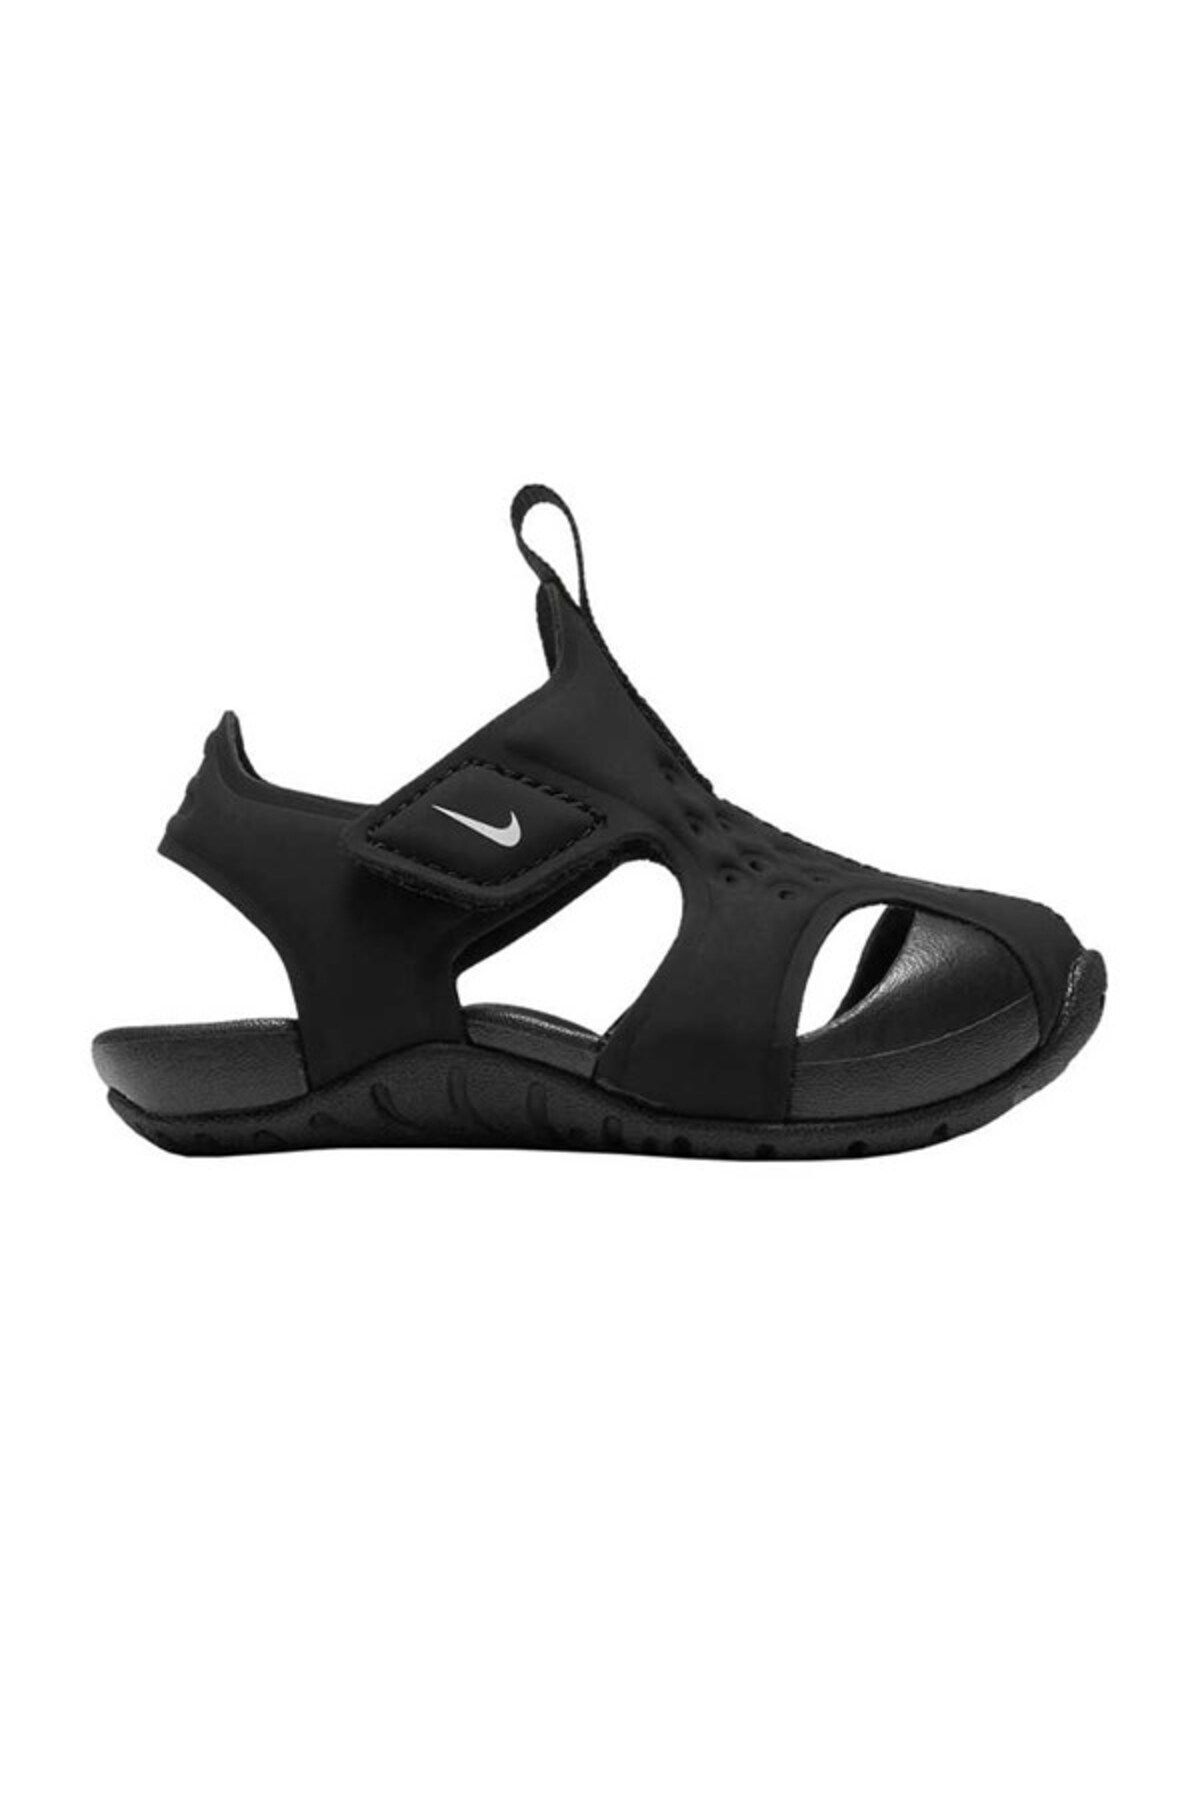 Nike Black Çocuk Terlik/sandalet 943827-001-001